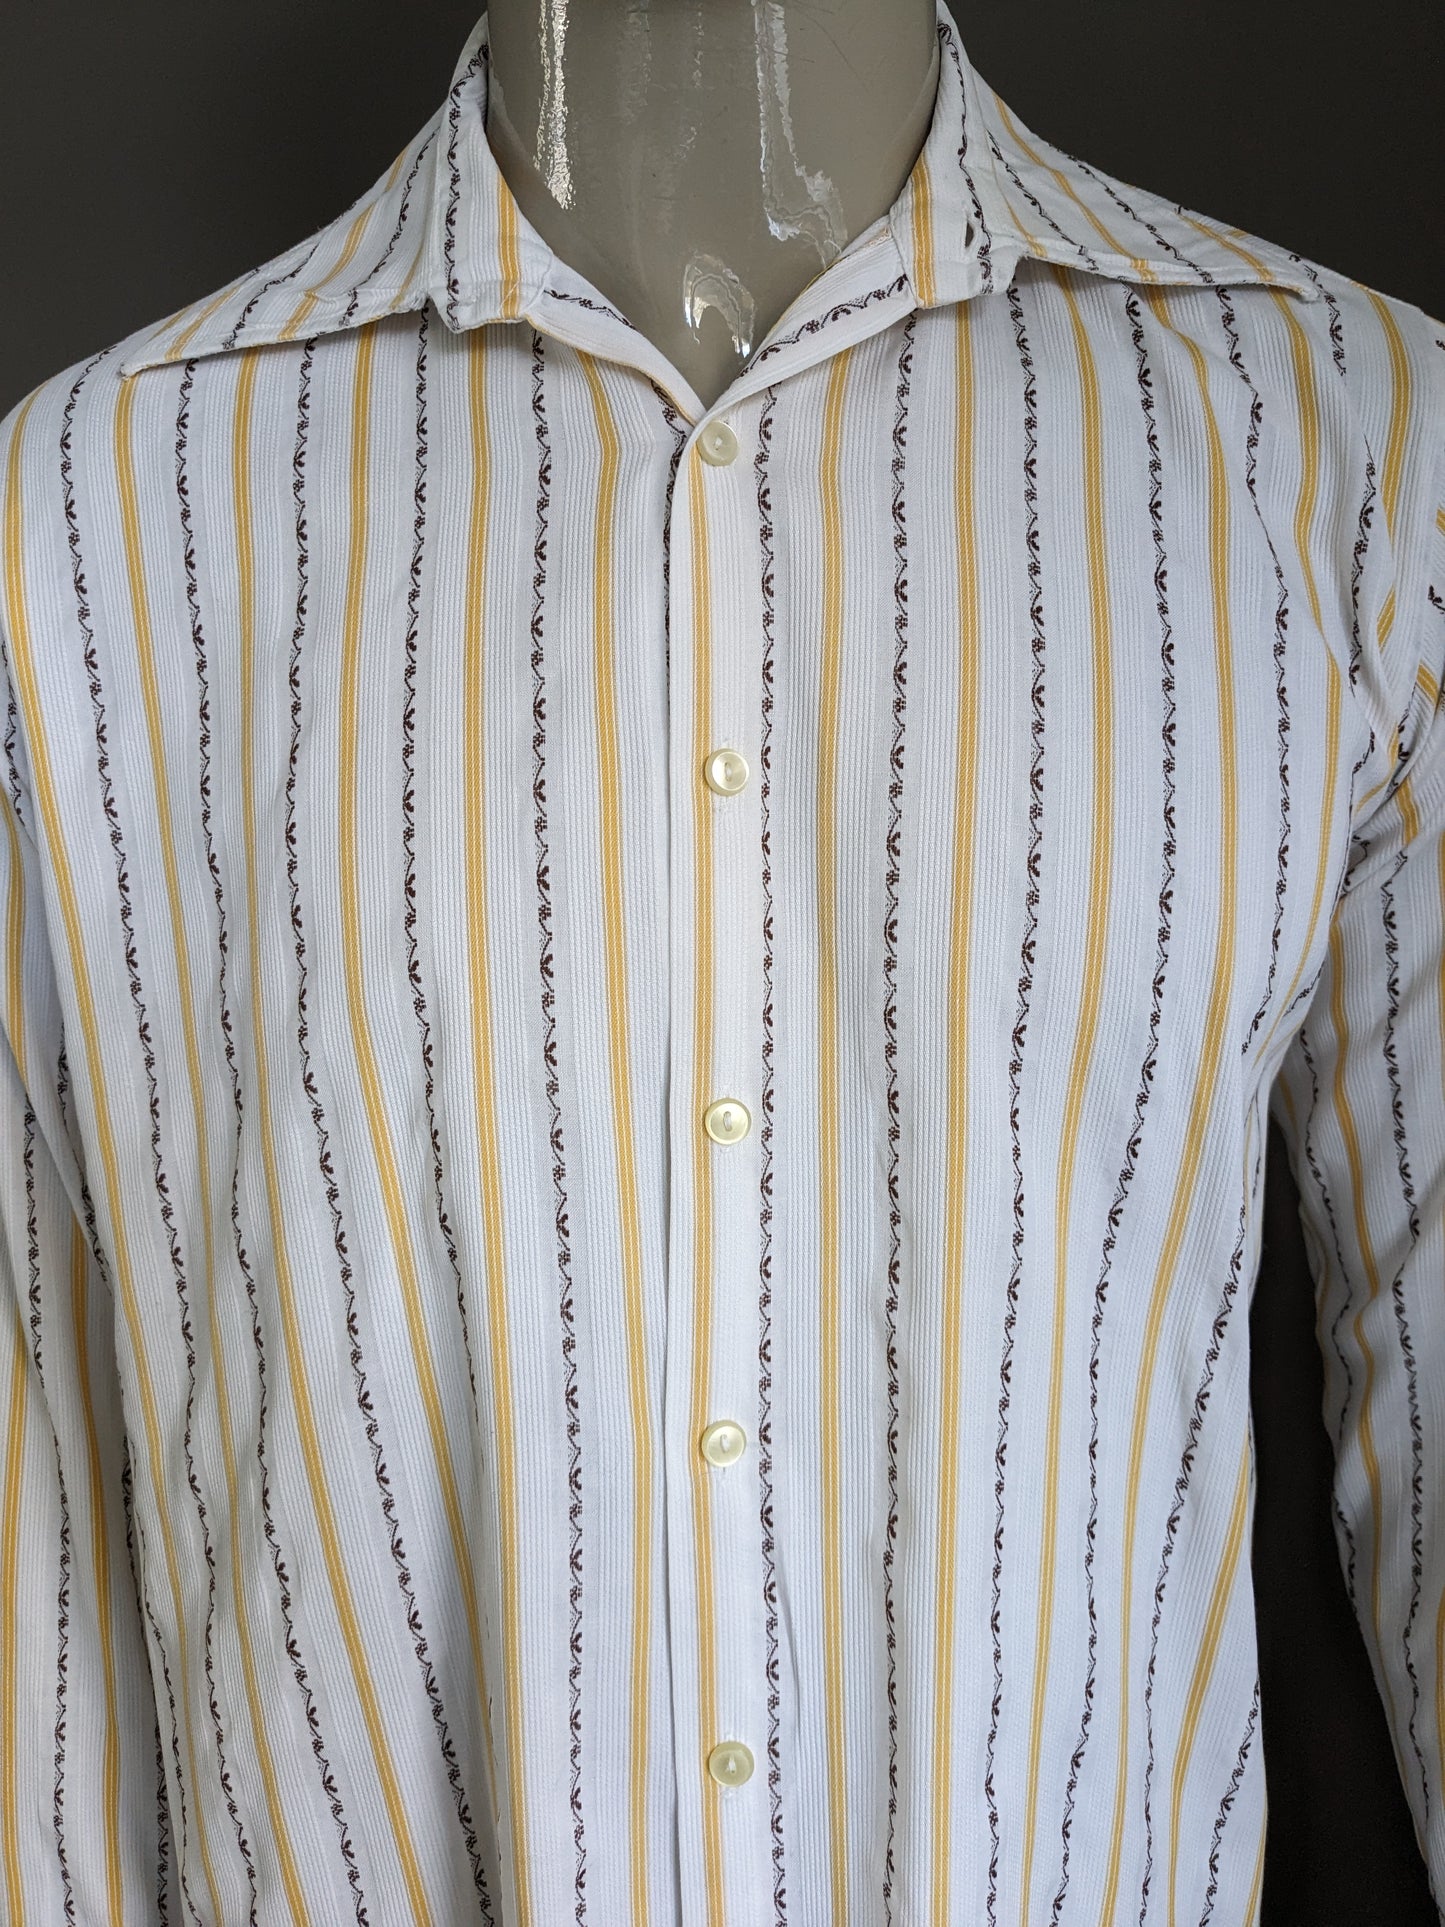 Camicia vintage degli anni '70 con colletto punto. Strisce bianche marrone giallo. Taglia L.